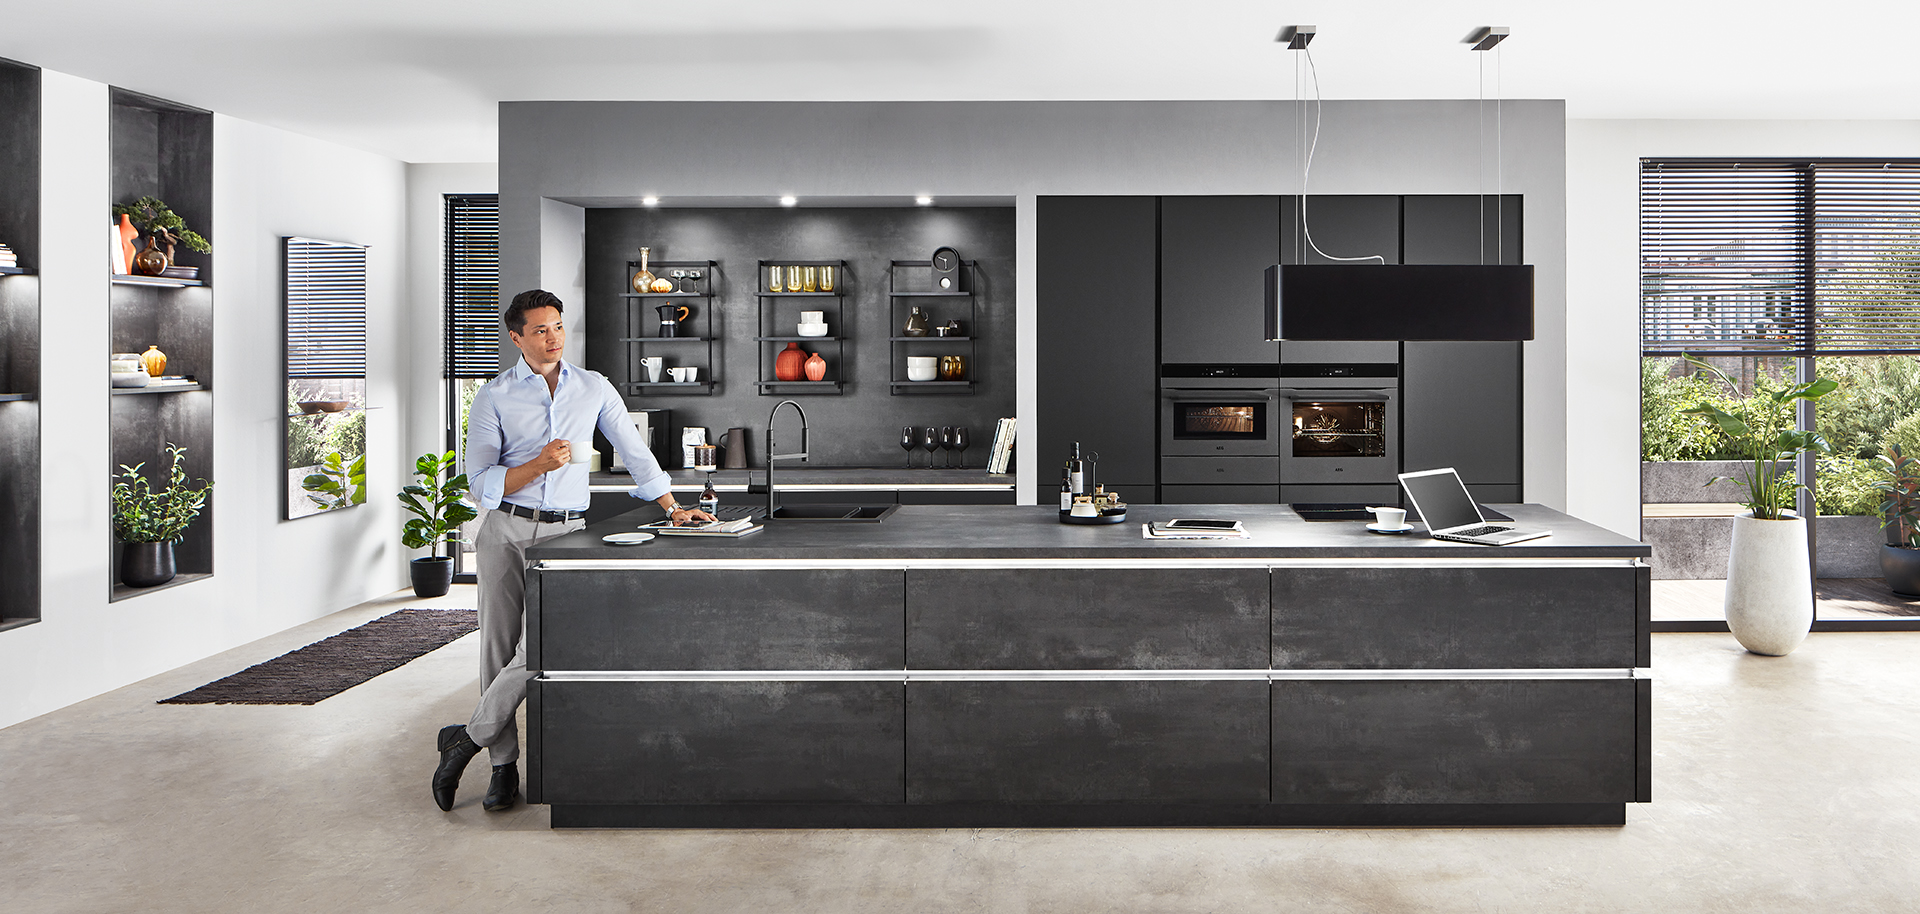 Interior de cocina moderna con un diseño elegante con gabinetes negros, electrodomésticos integrados y una persona preparando comida en la encimera de la isla.